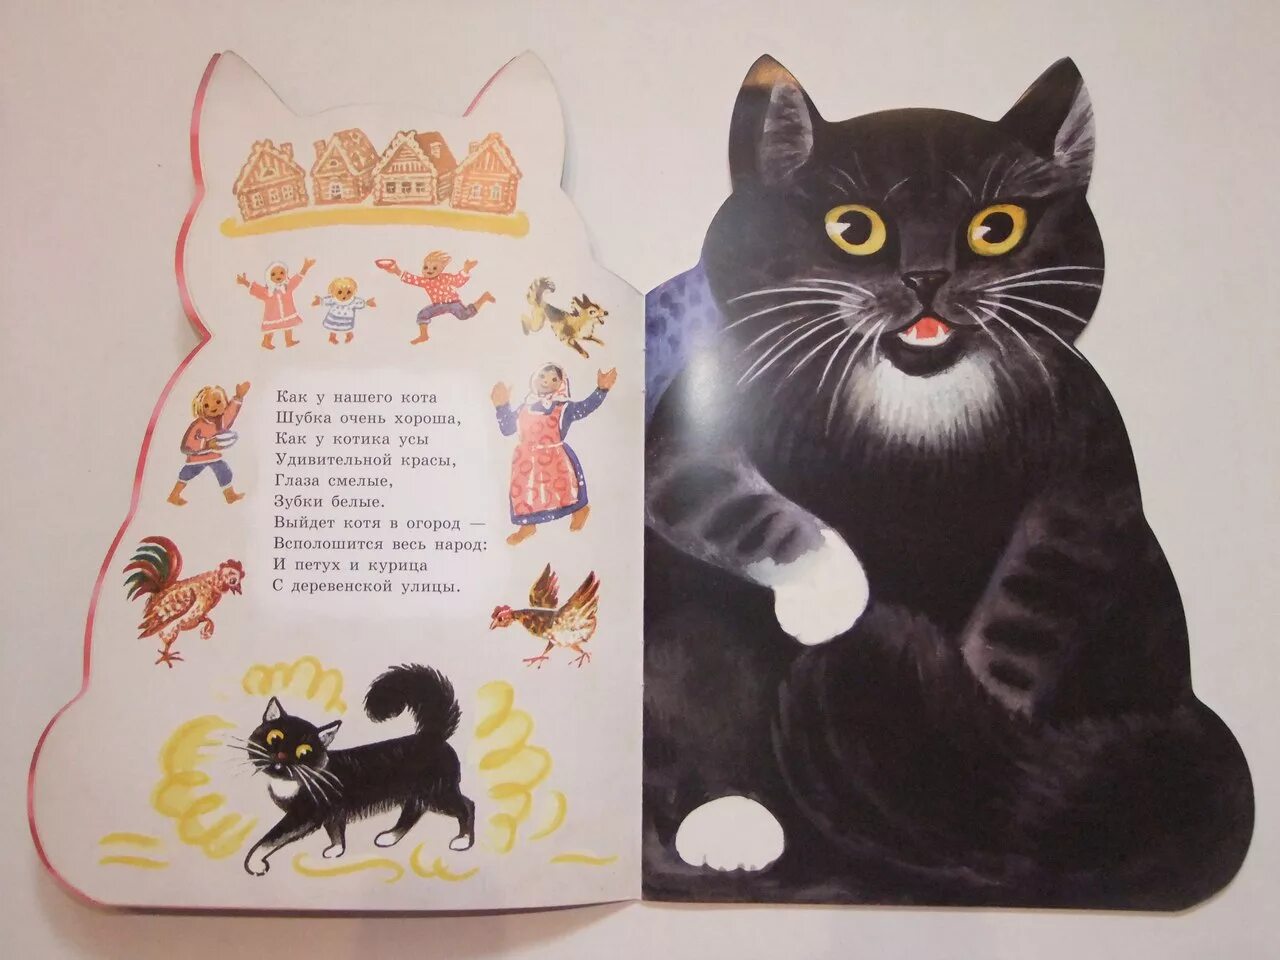 Произведения с котами. Произведения о котах. Книжки про котиков. Книги о котах и кошках для детей. Стих про кошку для детей.